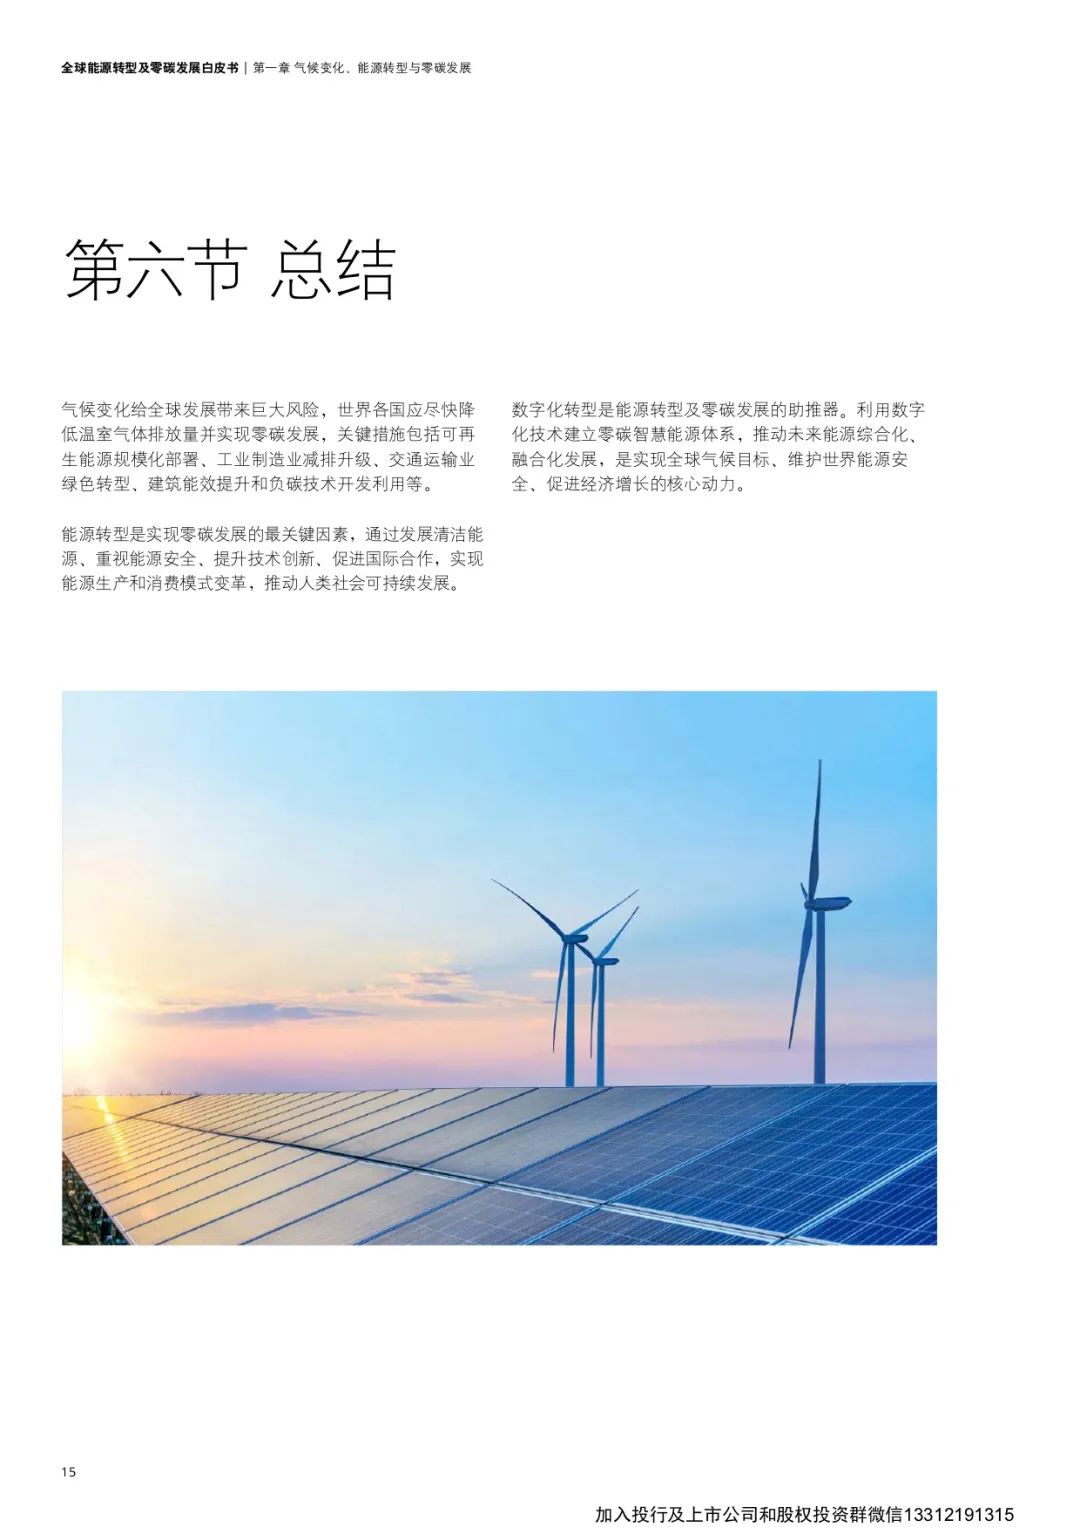 华为与德勤(中国)联合编写《全球能源转型及零碳发展白皮书 》